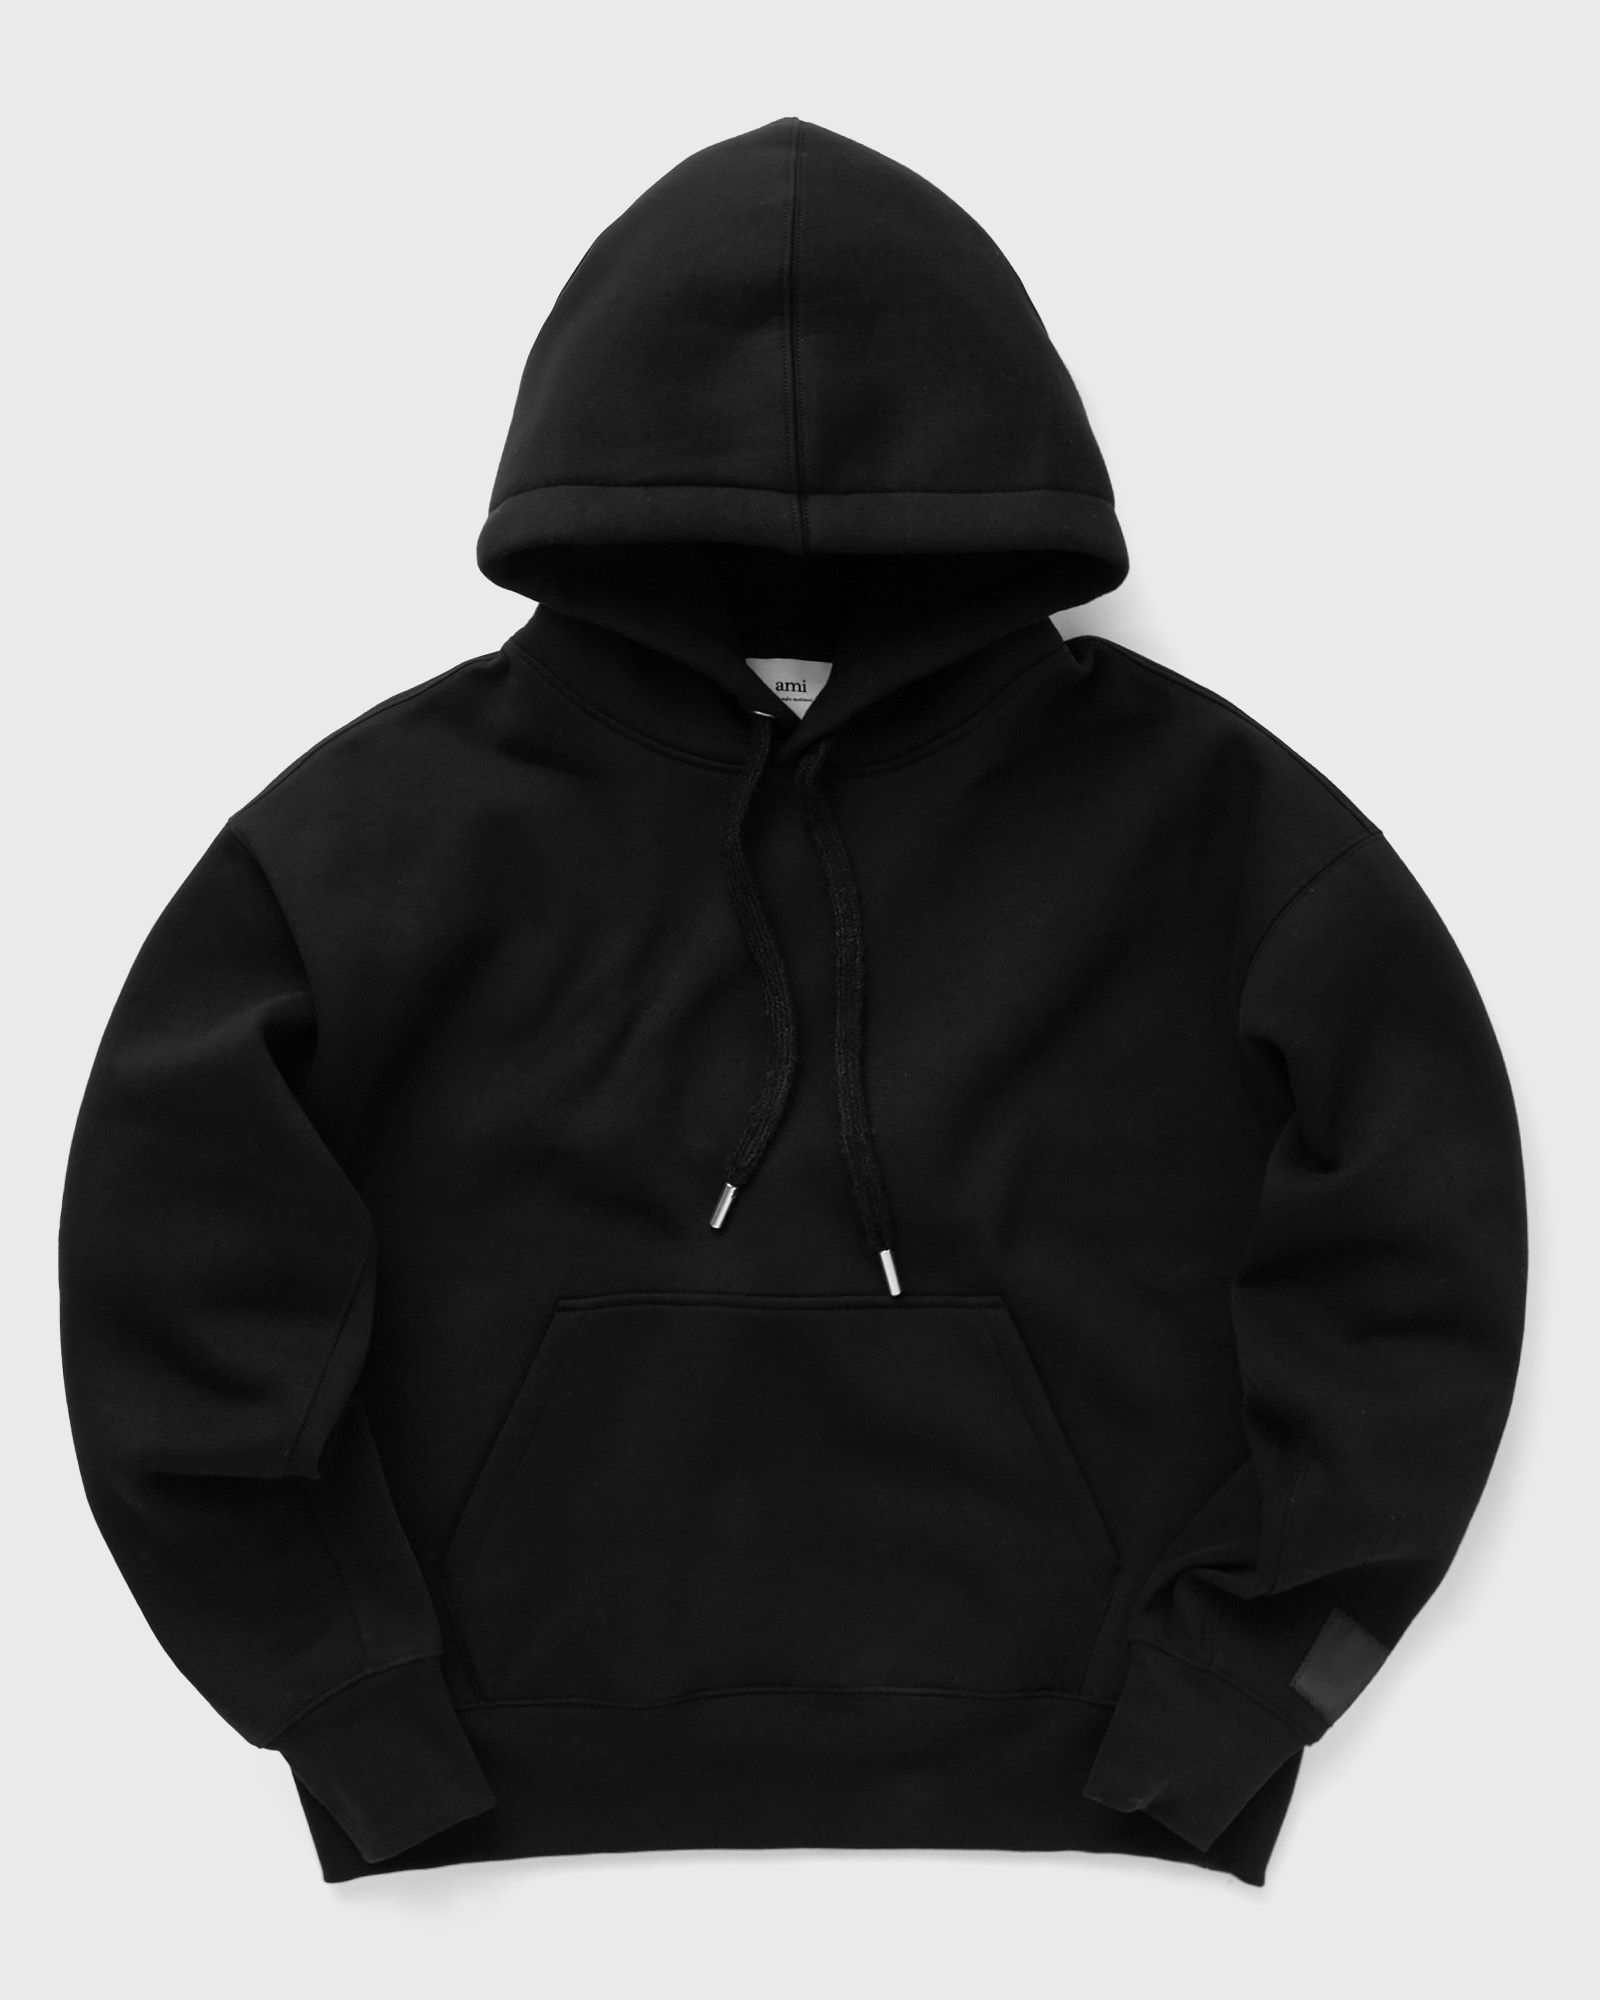 AMI Paris - ami alexandre mattiussi hoodie men hoodies black in größe:xxl